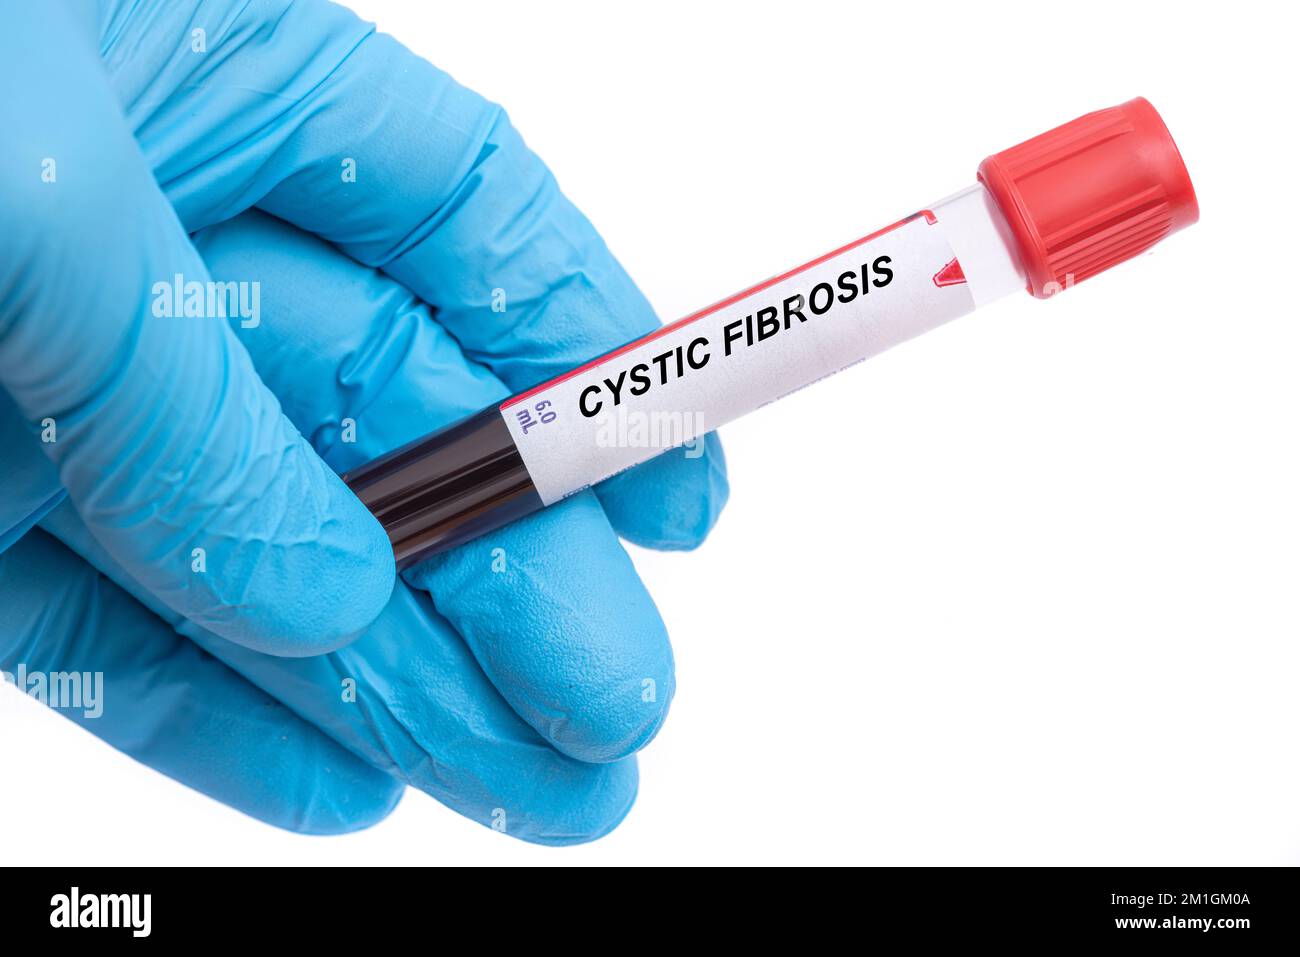 Fibrose kystique. Test sanguin de la maladie de la fibrose kystique dans la main du médecin Banque D'Images